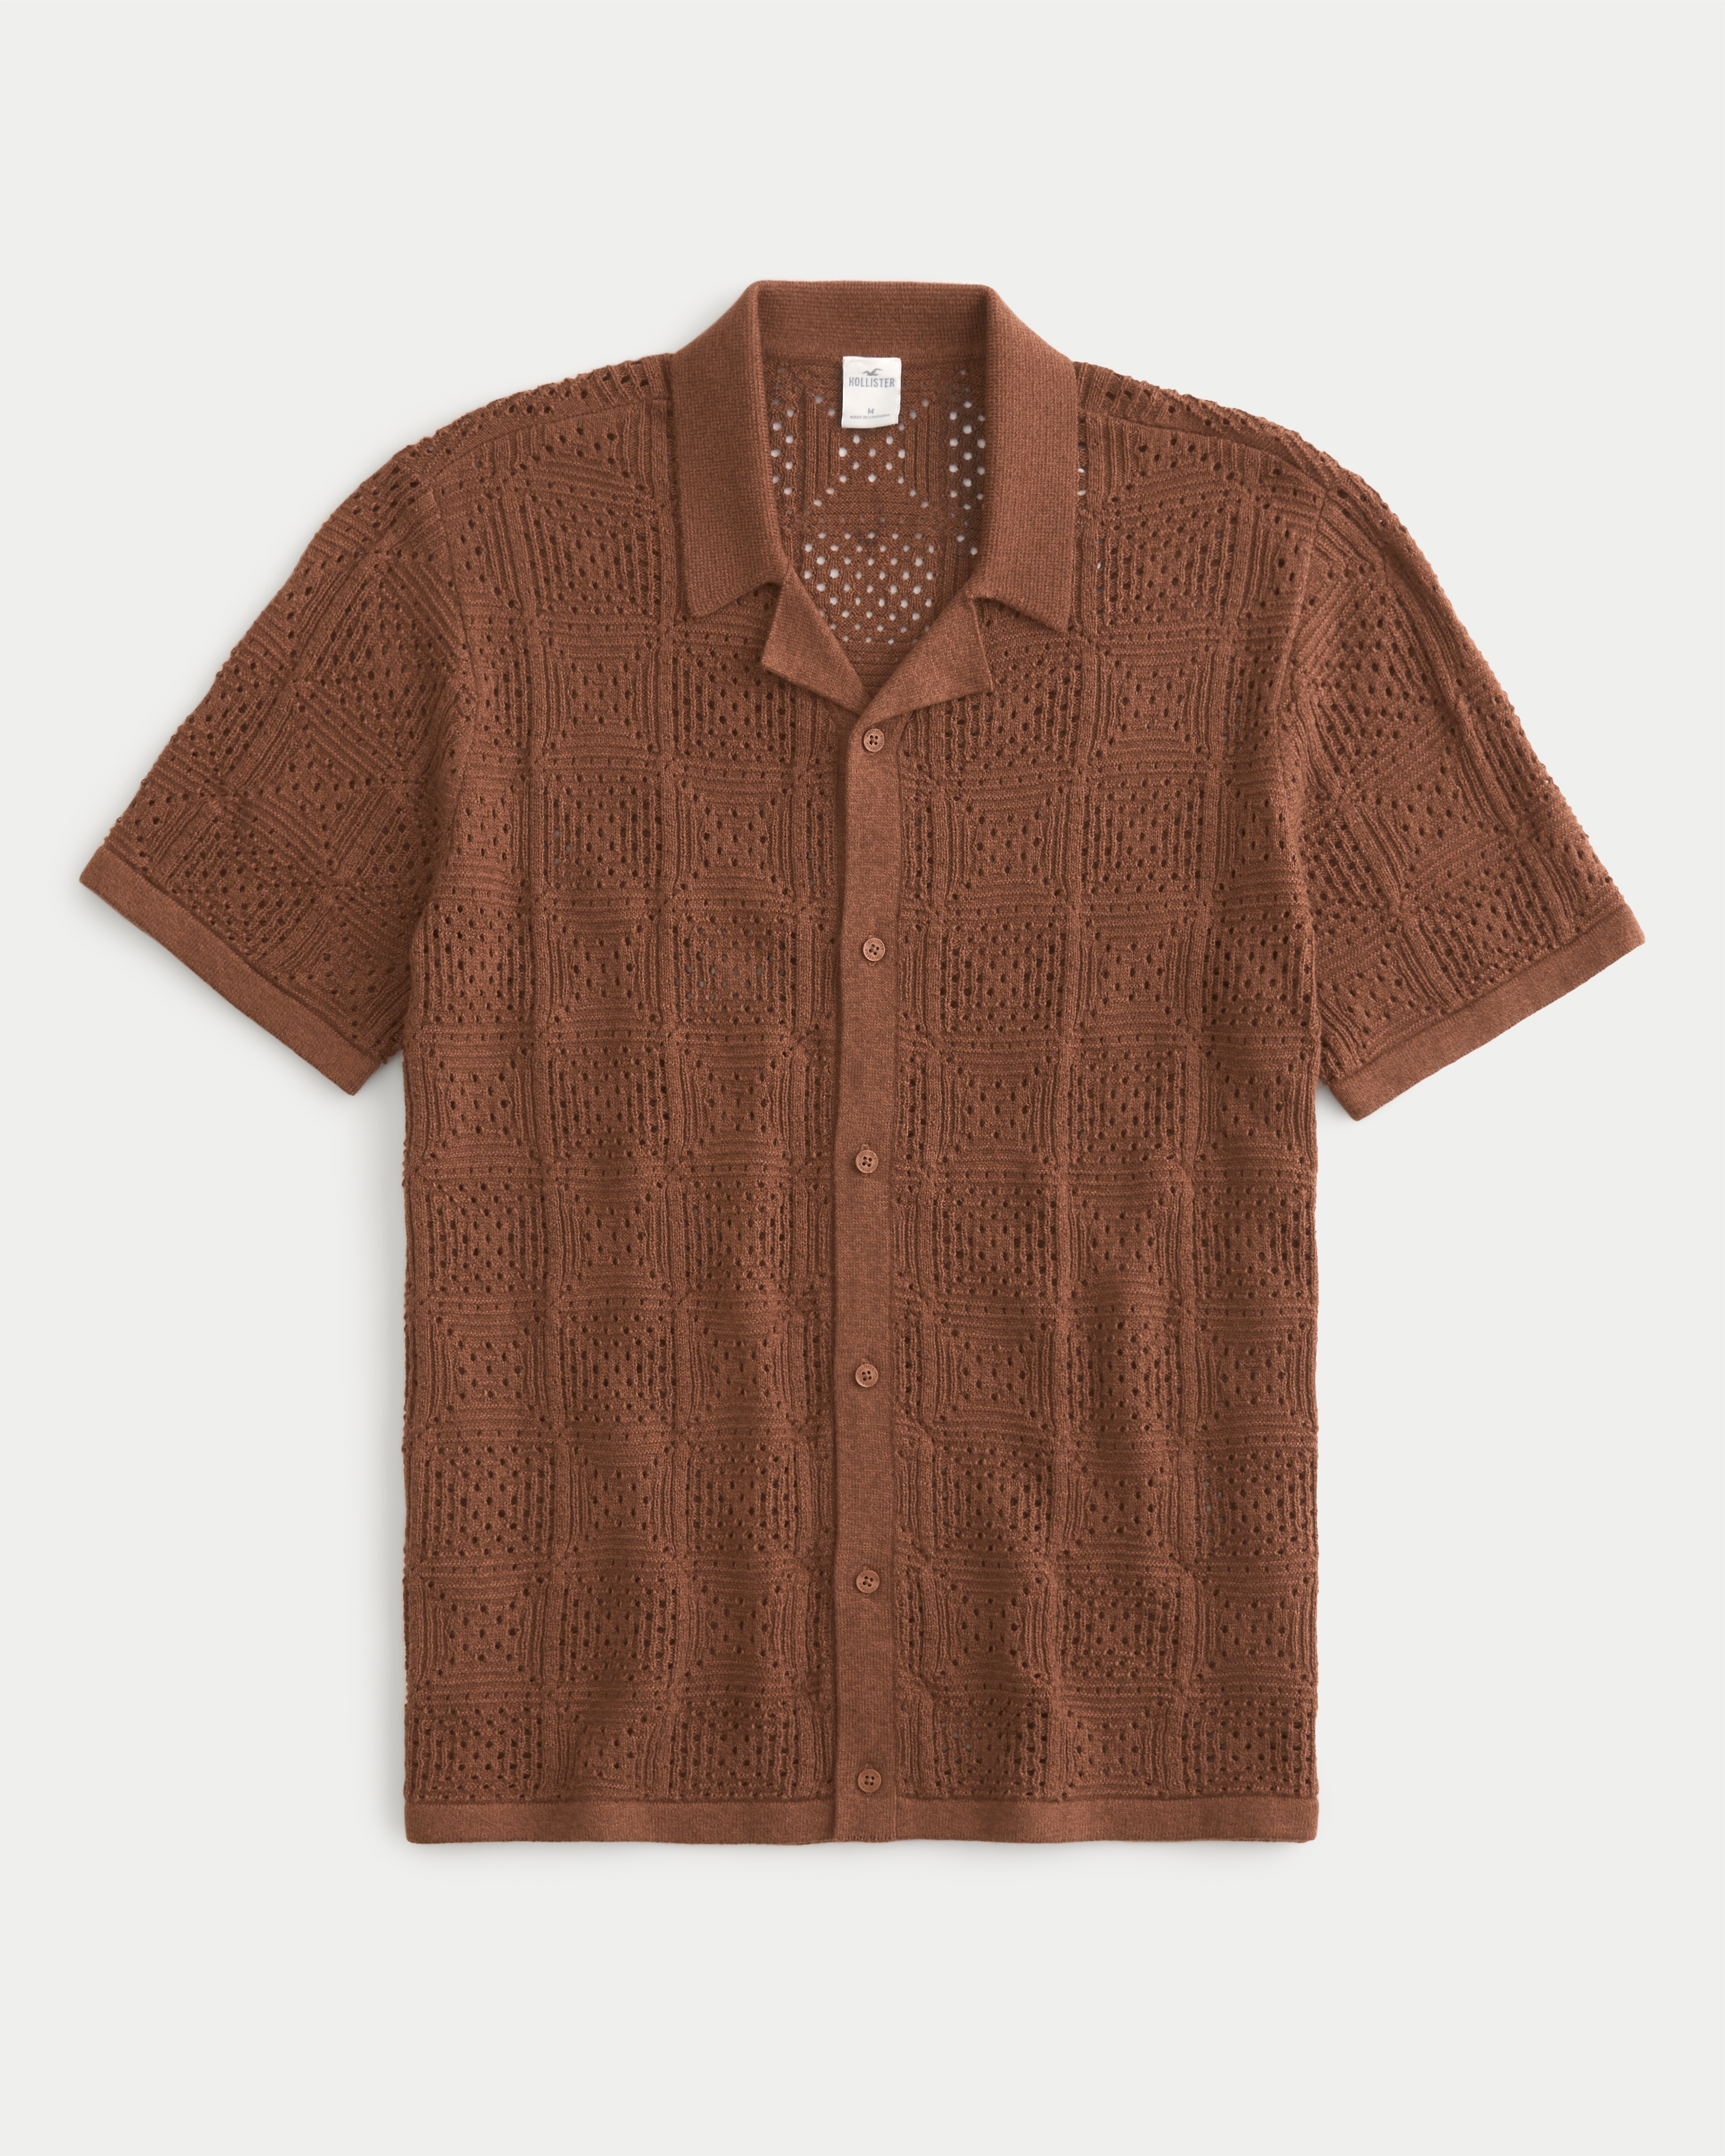 Short-Sleeve Open-Stitch Sweater Shirt